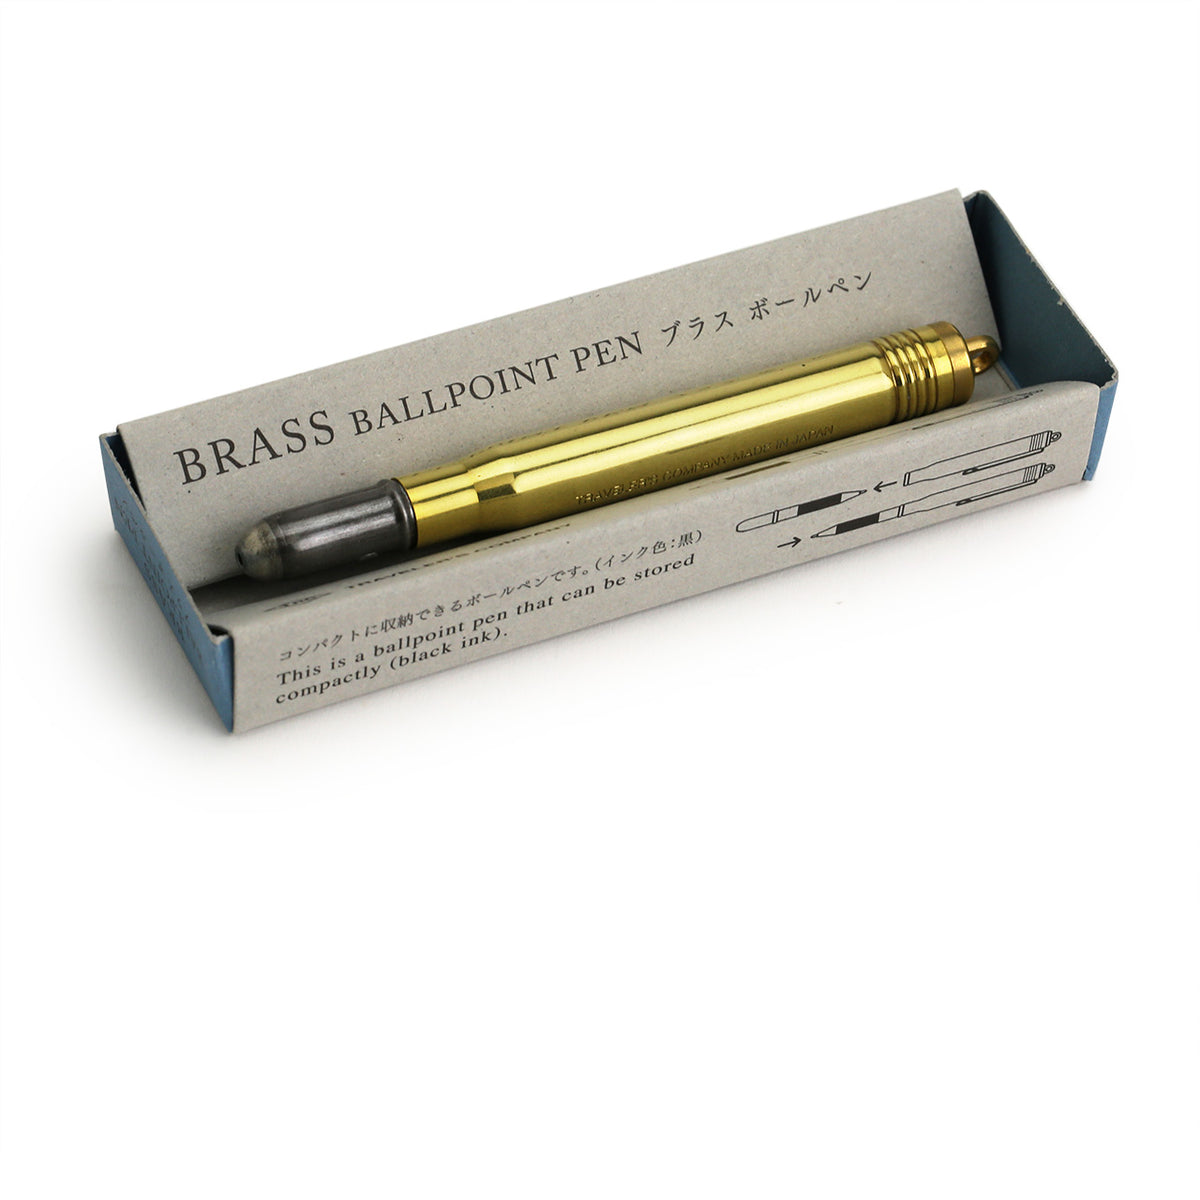 Brass ballpoint pen in its kraft packaging